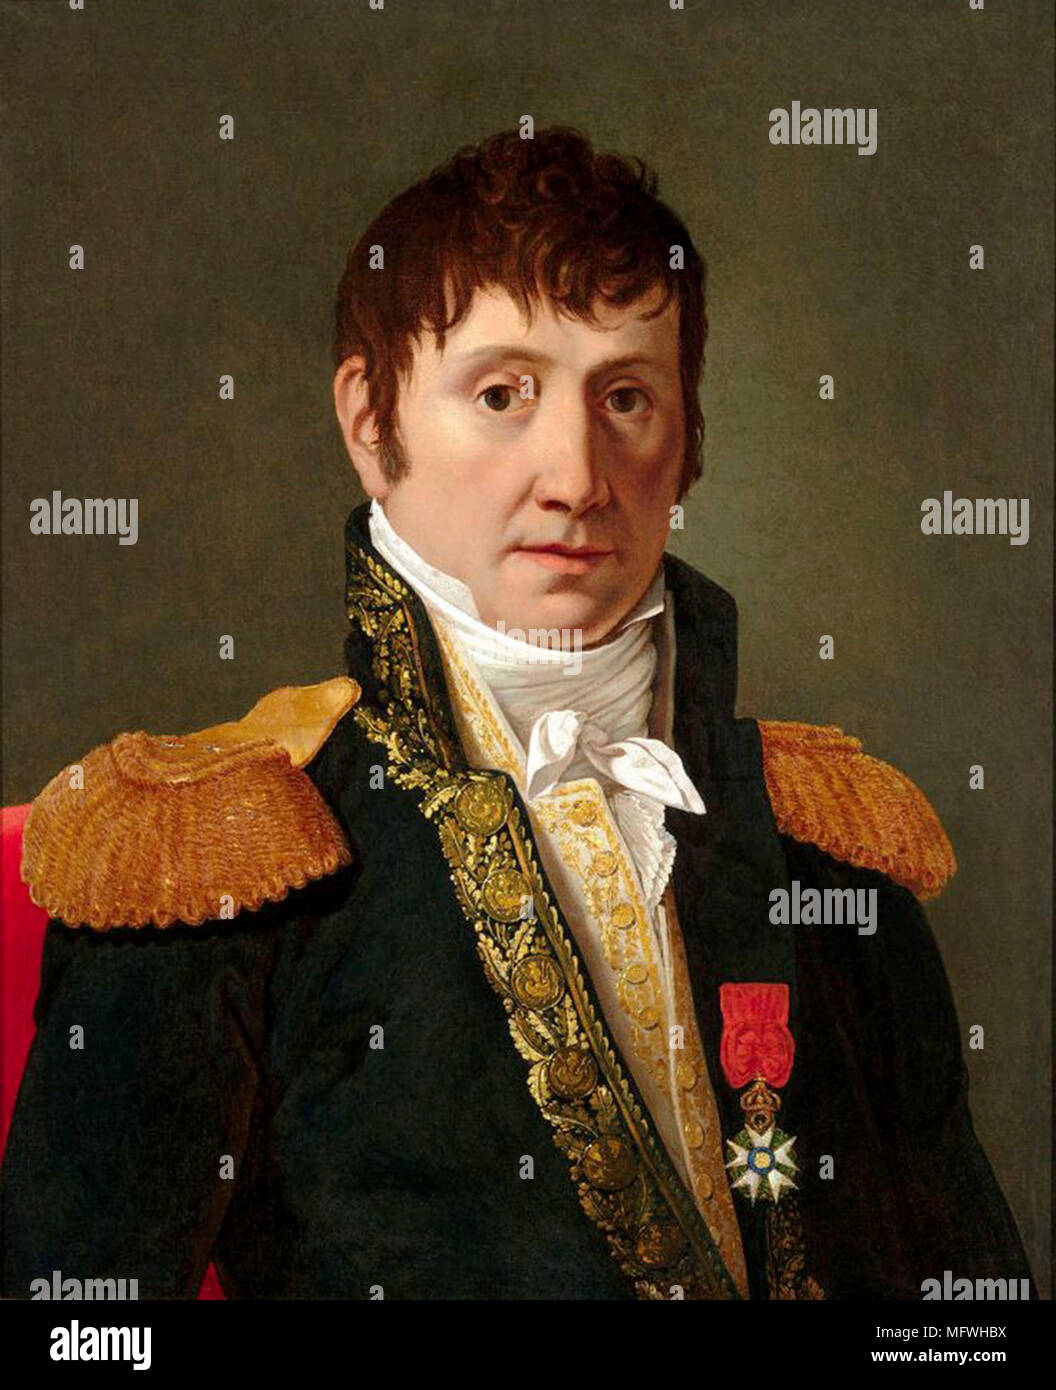 Il maresciallo generale Jean de Dieu Soult, primo duca di Dalmazia, (1769 - 1851) francese generale e statista, nominato maresciallo dell'Impero nel 1804 e spesso chiamato il maresciallo Soult. Il duca è servito anche per tre volte come Presidente del Consiglio dei ministri, o il primo ministro di Francia. Foto Stock